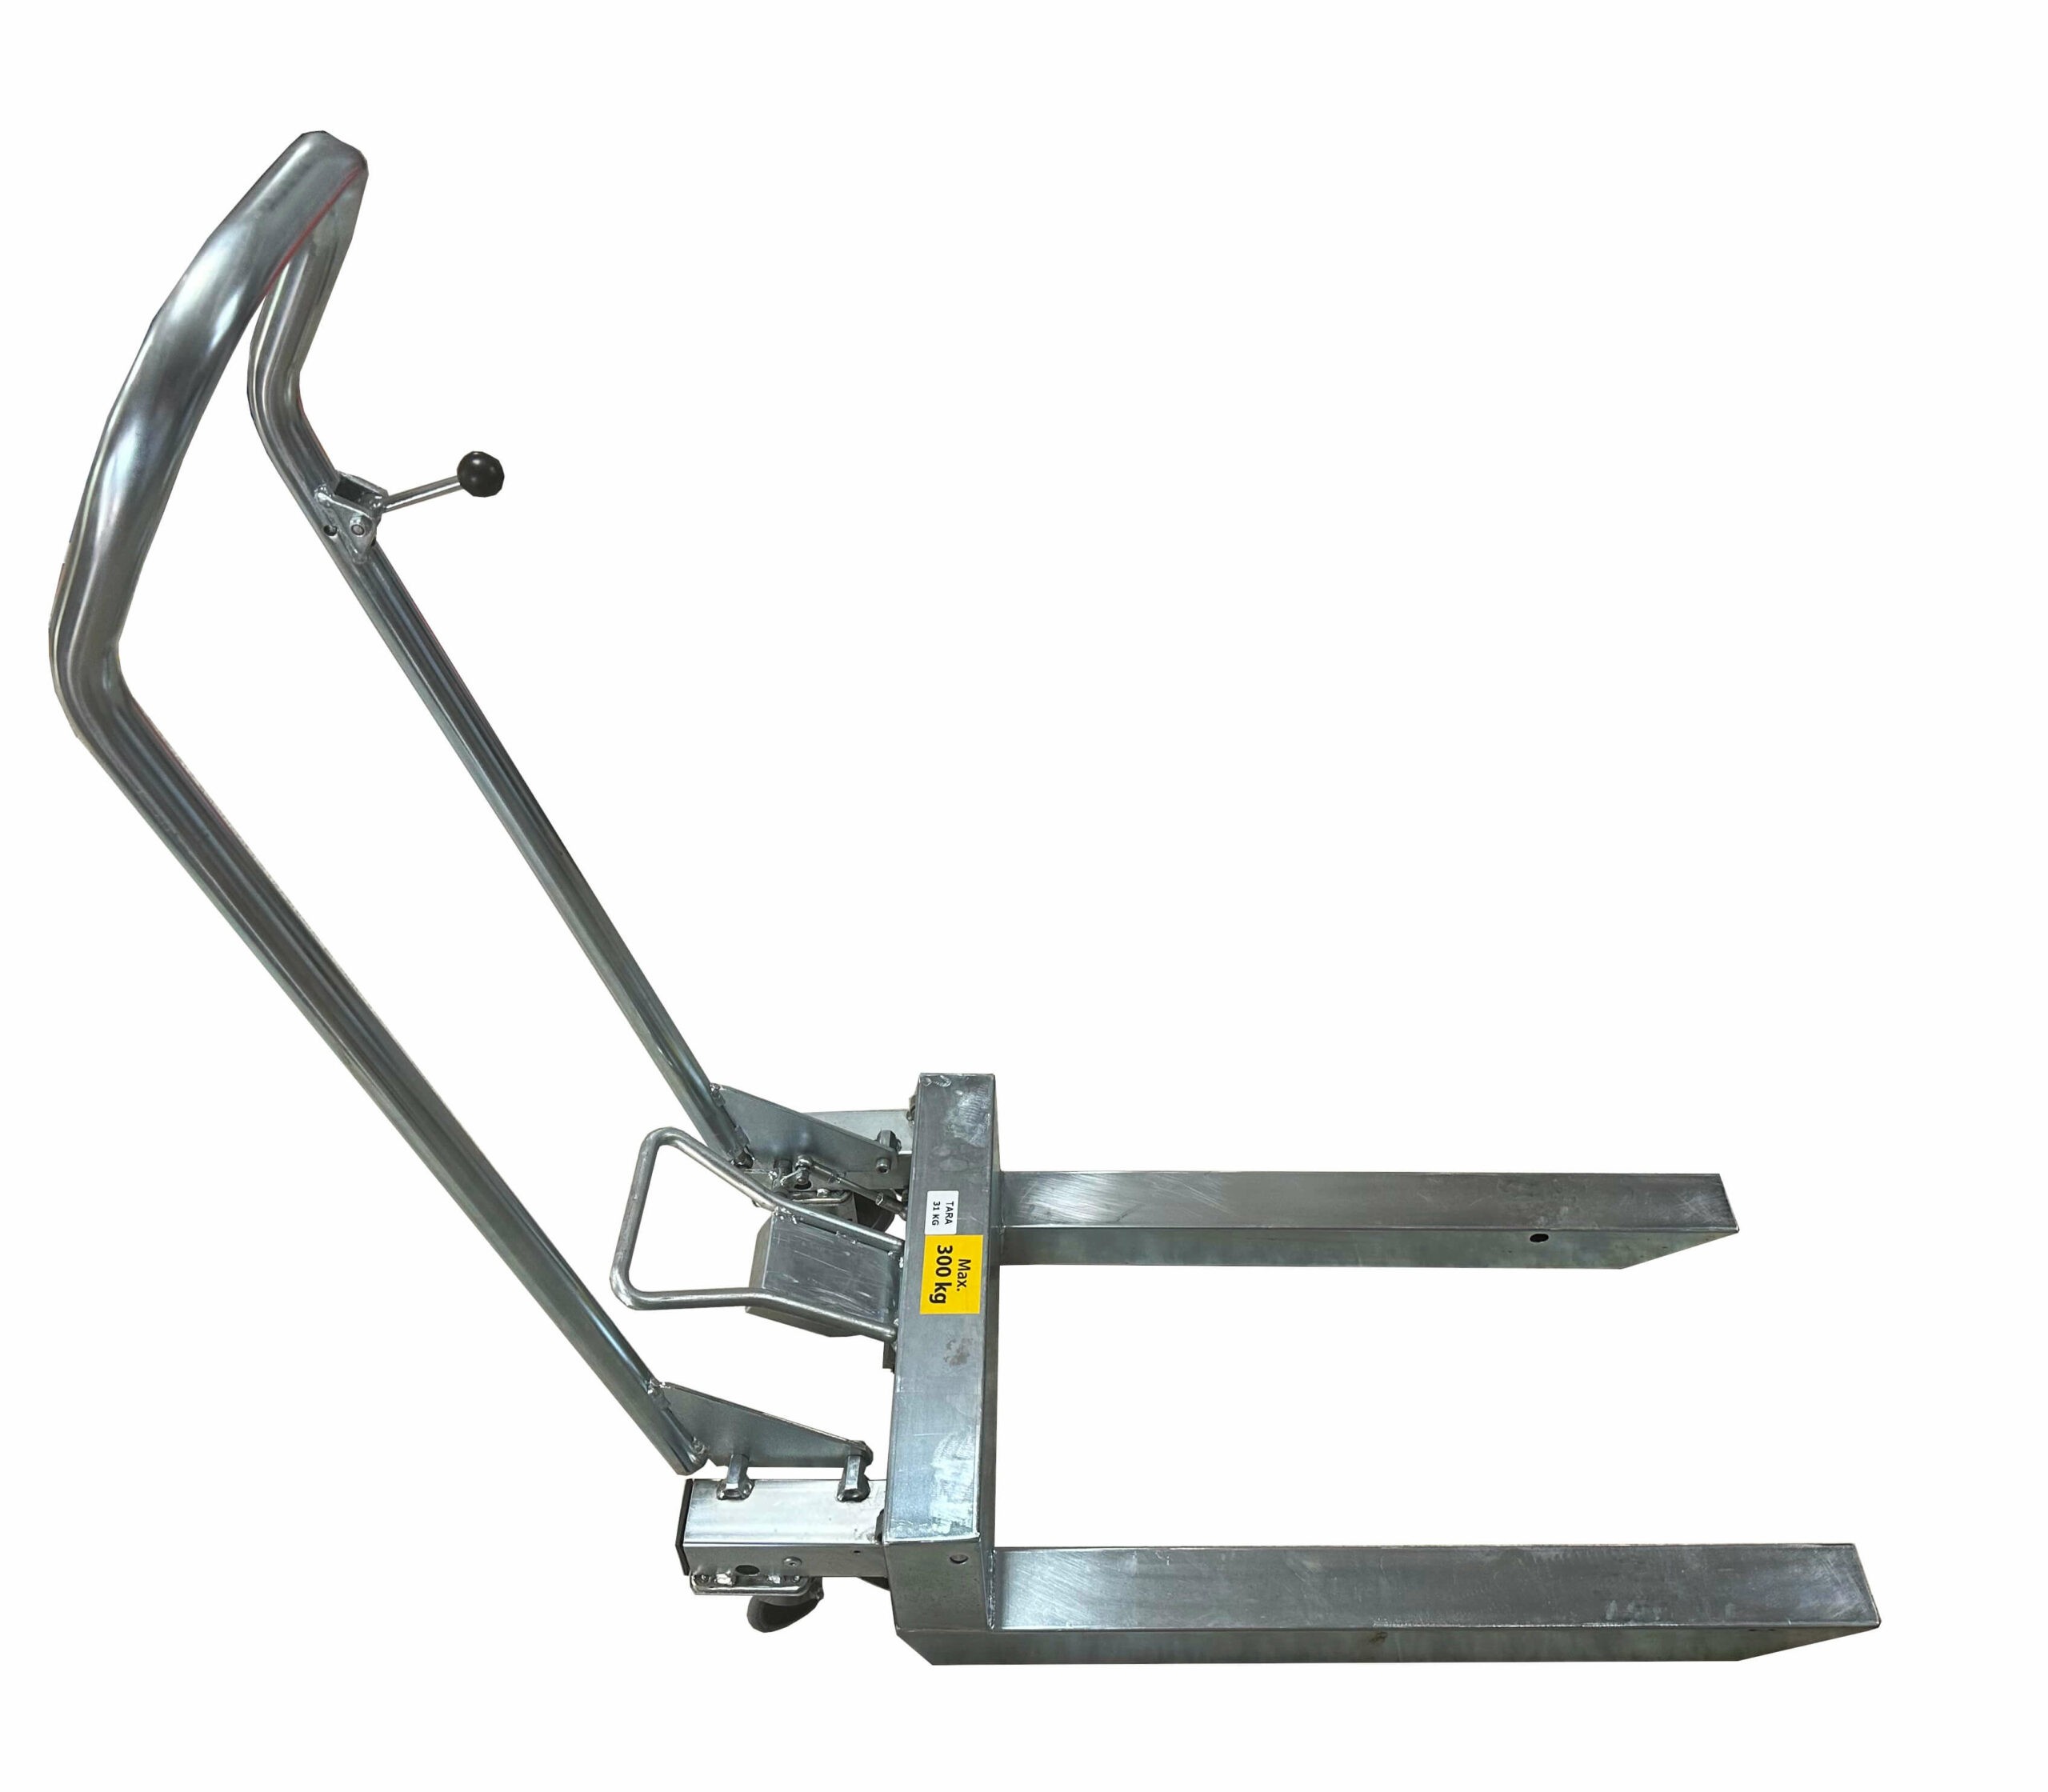 Vienu pedalo paspaudimu iki 300kg svorio paletę pakeliantis, lengvas cinkuoto plieno palečių vežimėlis Athlet 780mm ilgio šakėmis